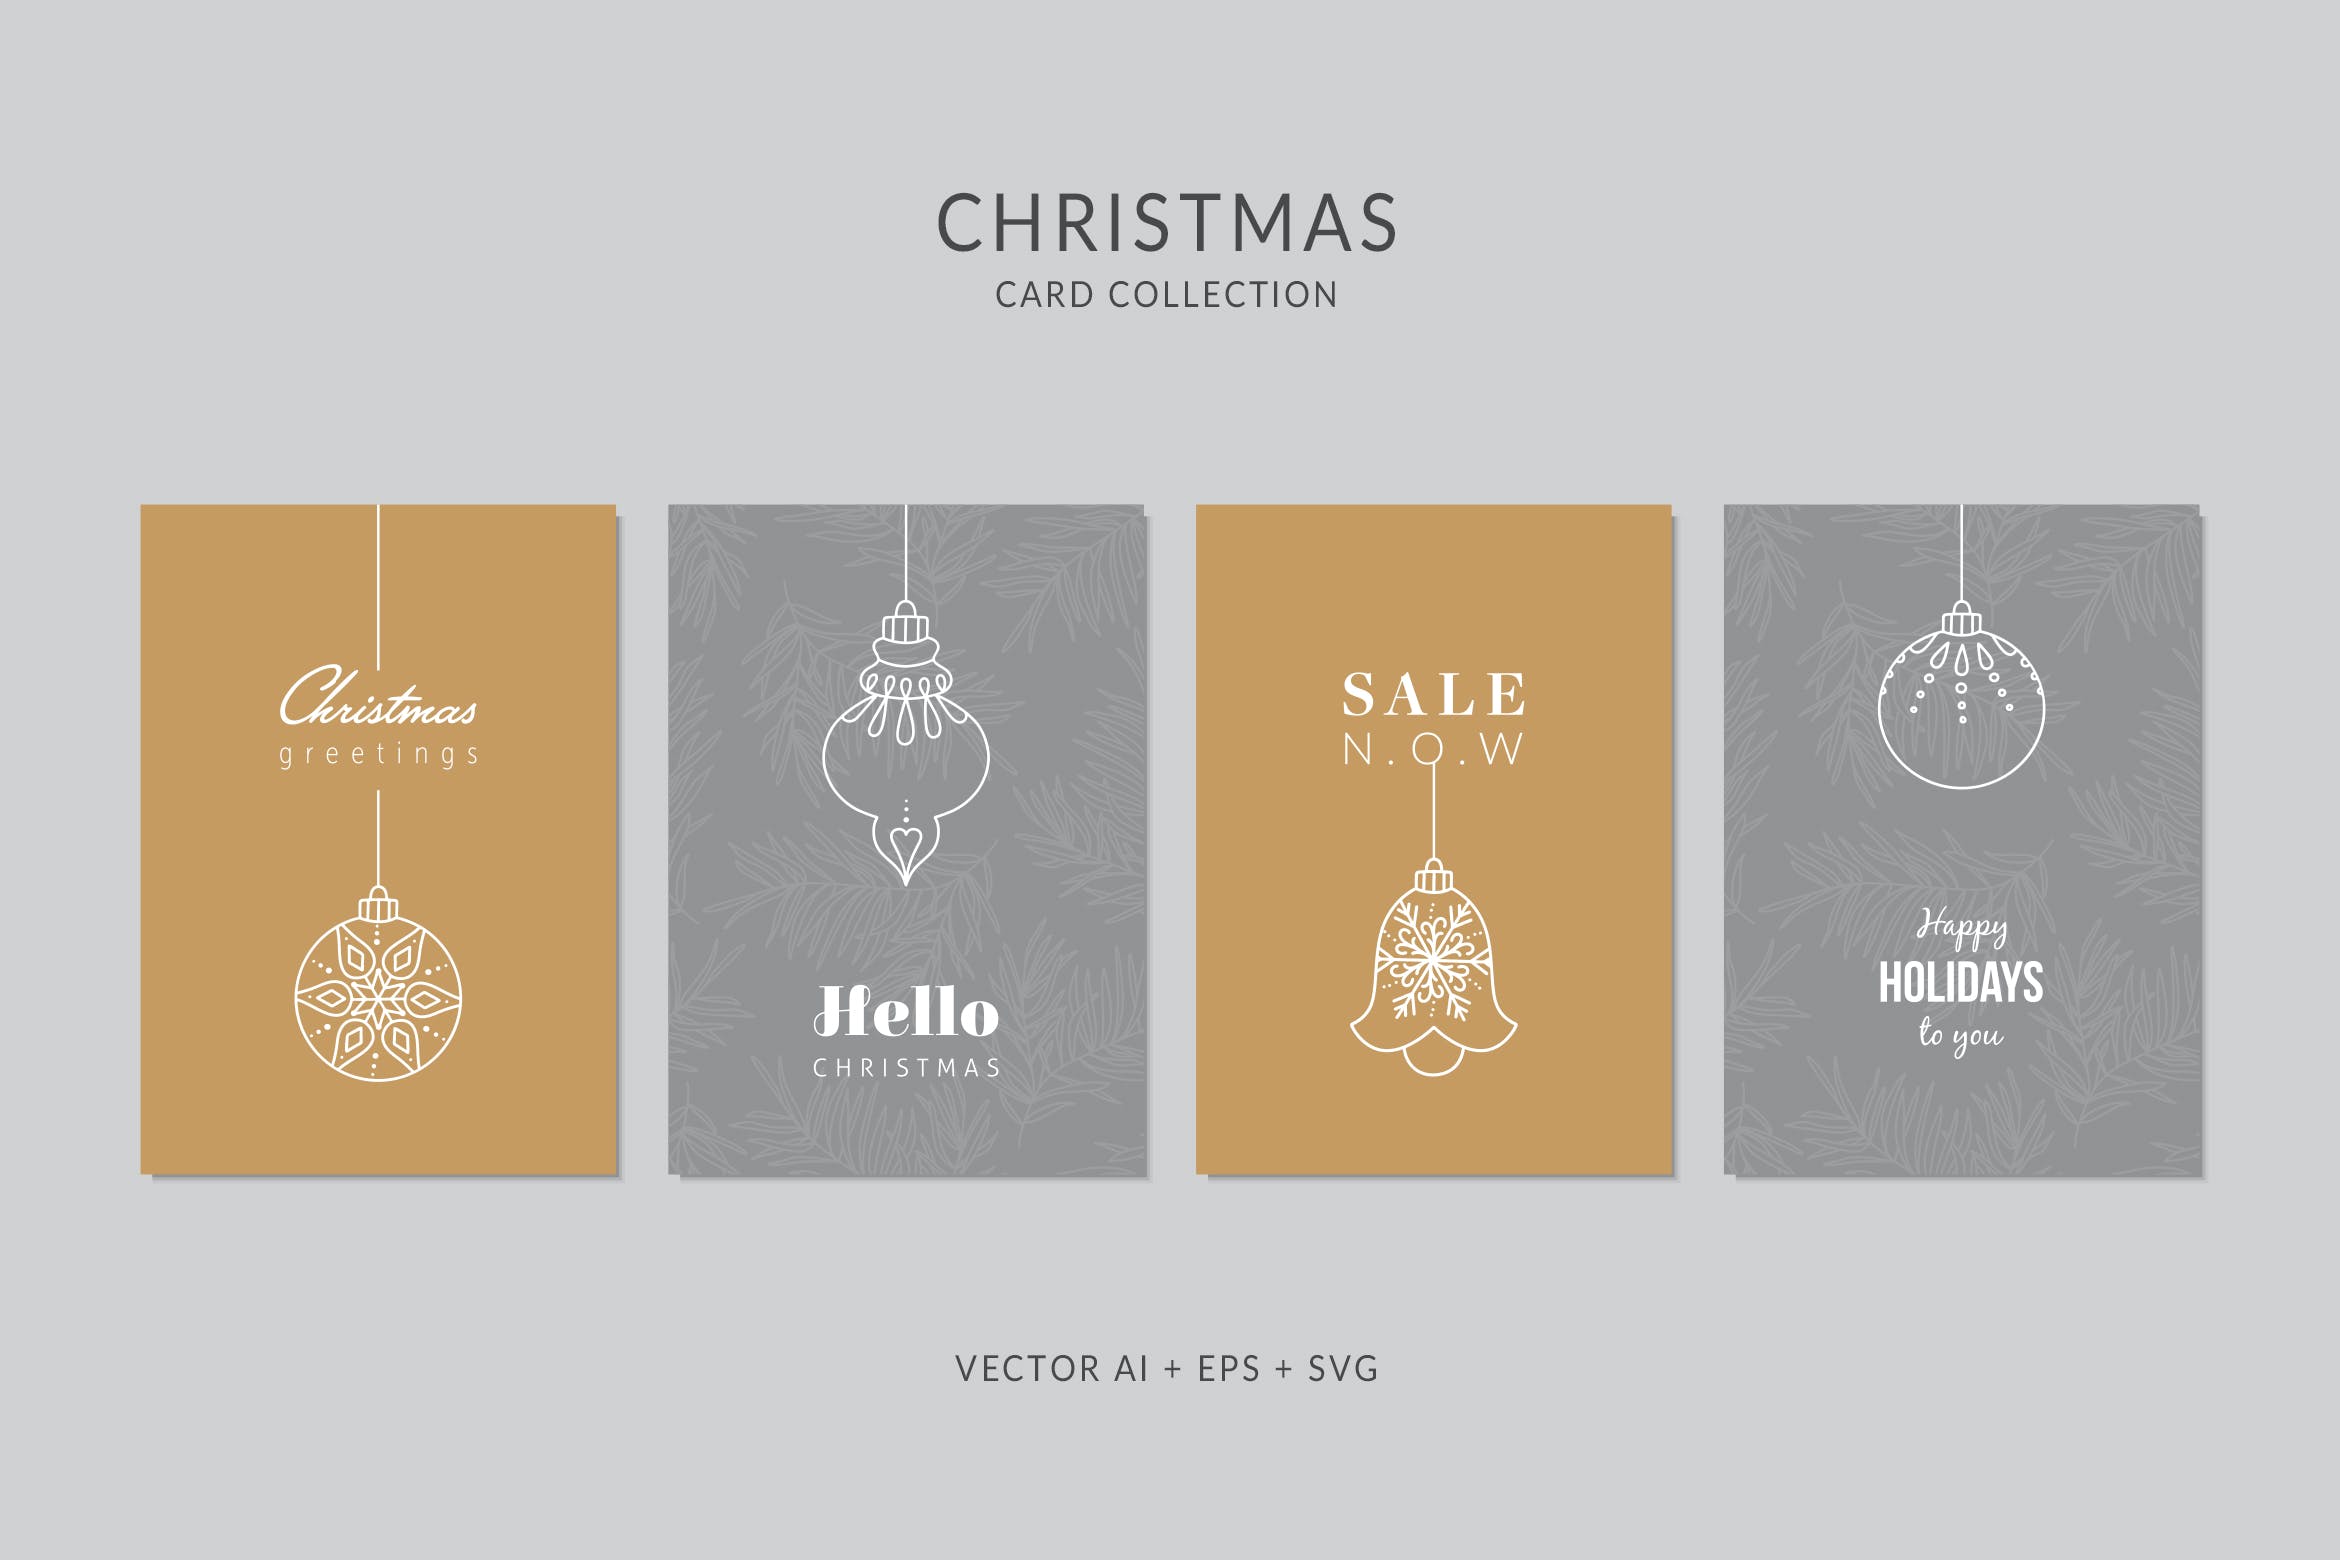 简笔画艺术风格圣诞节贺卡矢量设计模板集v2 Christmas Greeting Card Vector Set插图